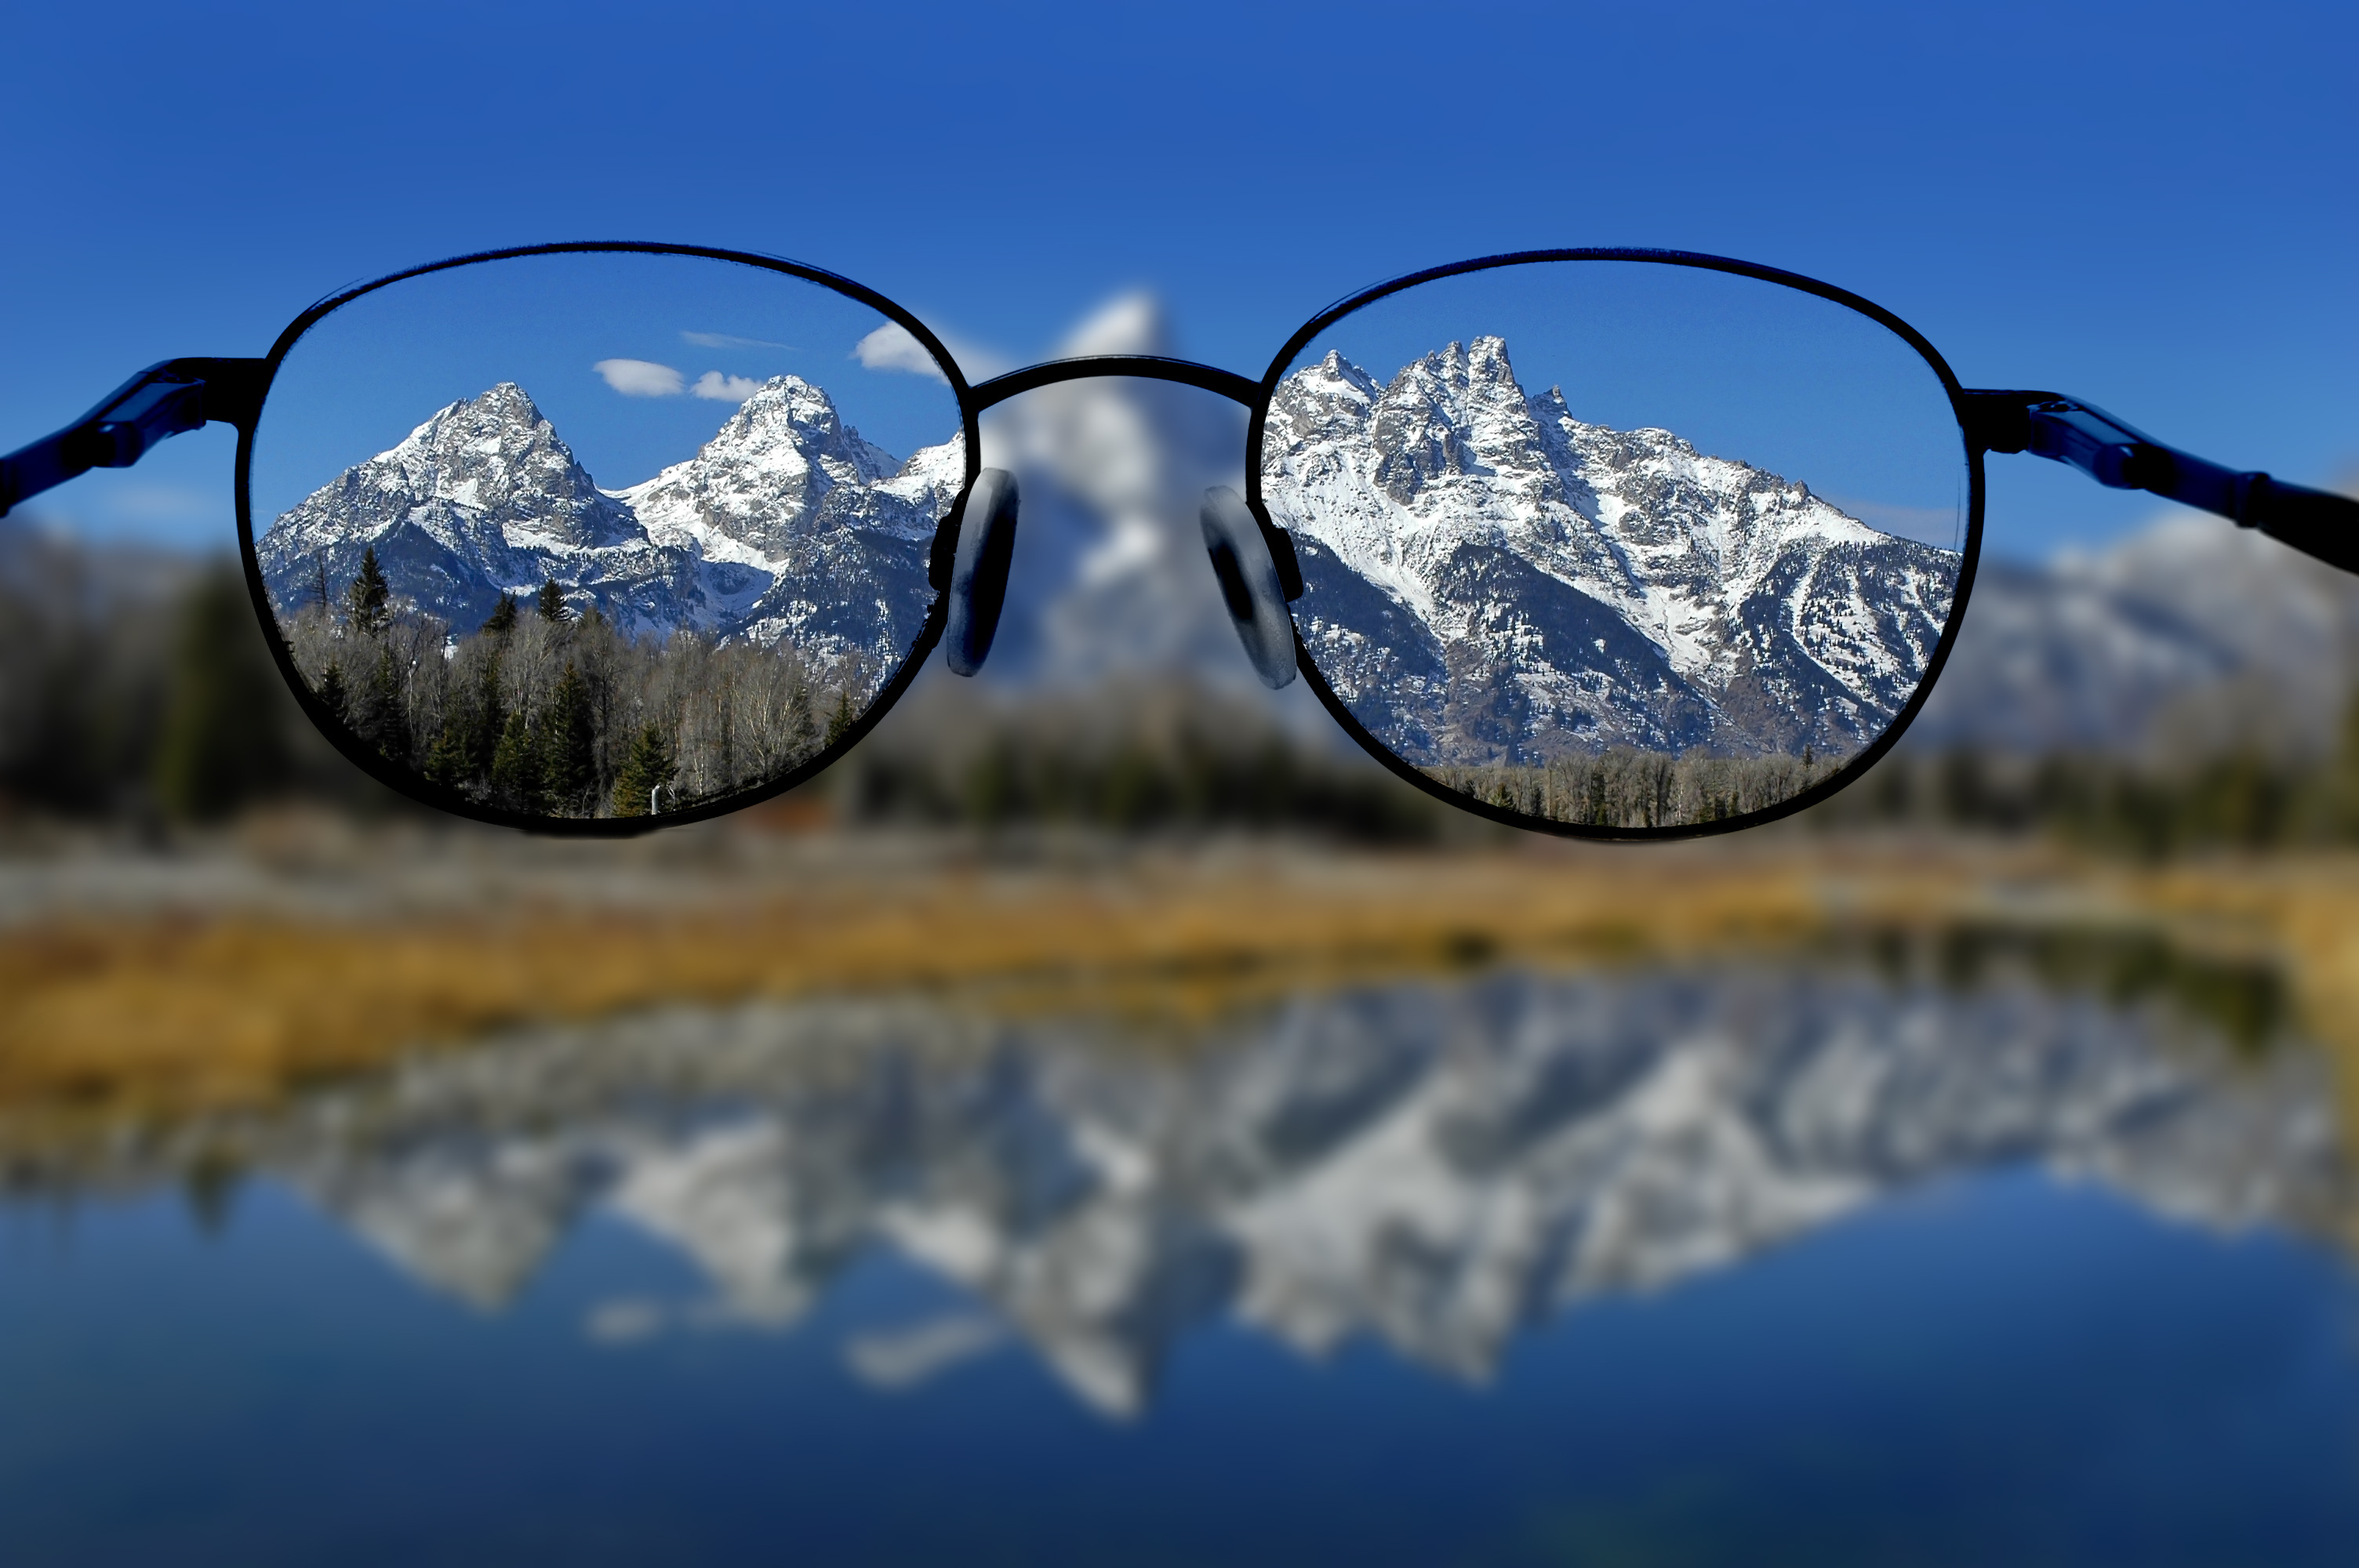 Очки мире игры. Очки для близорукости. Отражение гор в очках. Через очки. Зрение.